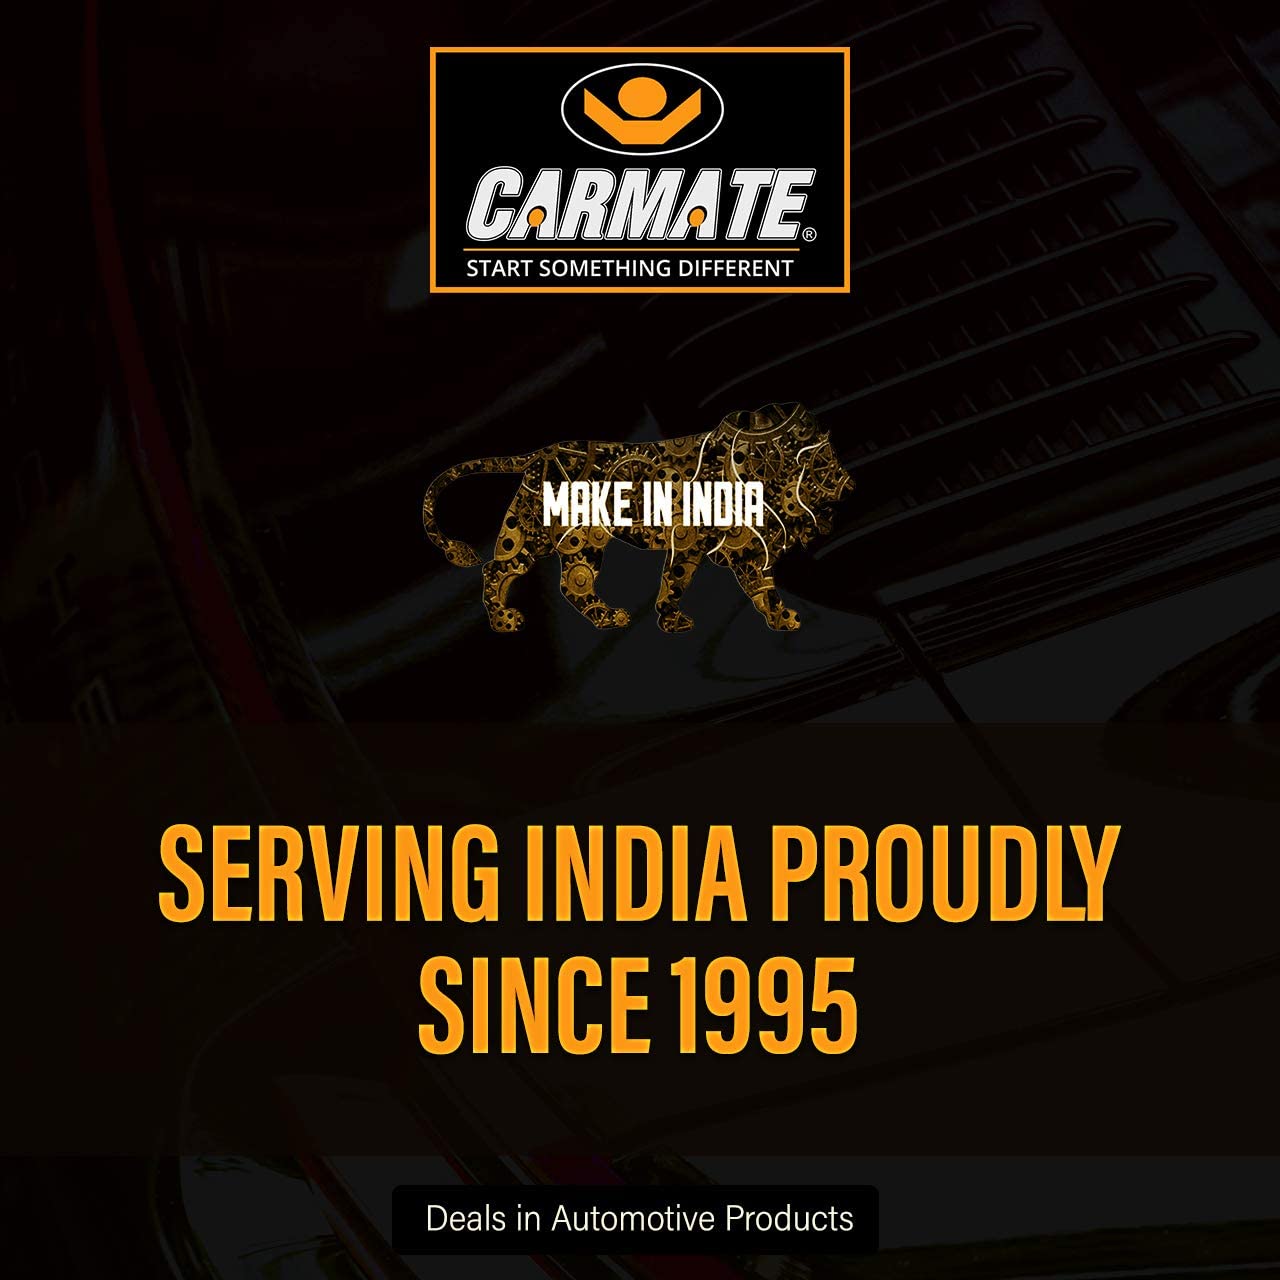 Carmate Passion Car Body Cover (Black and Orange) for Range Rover - Evoque - CARMATE®